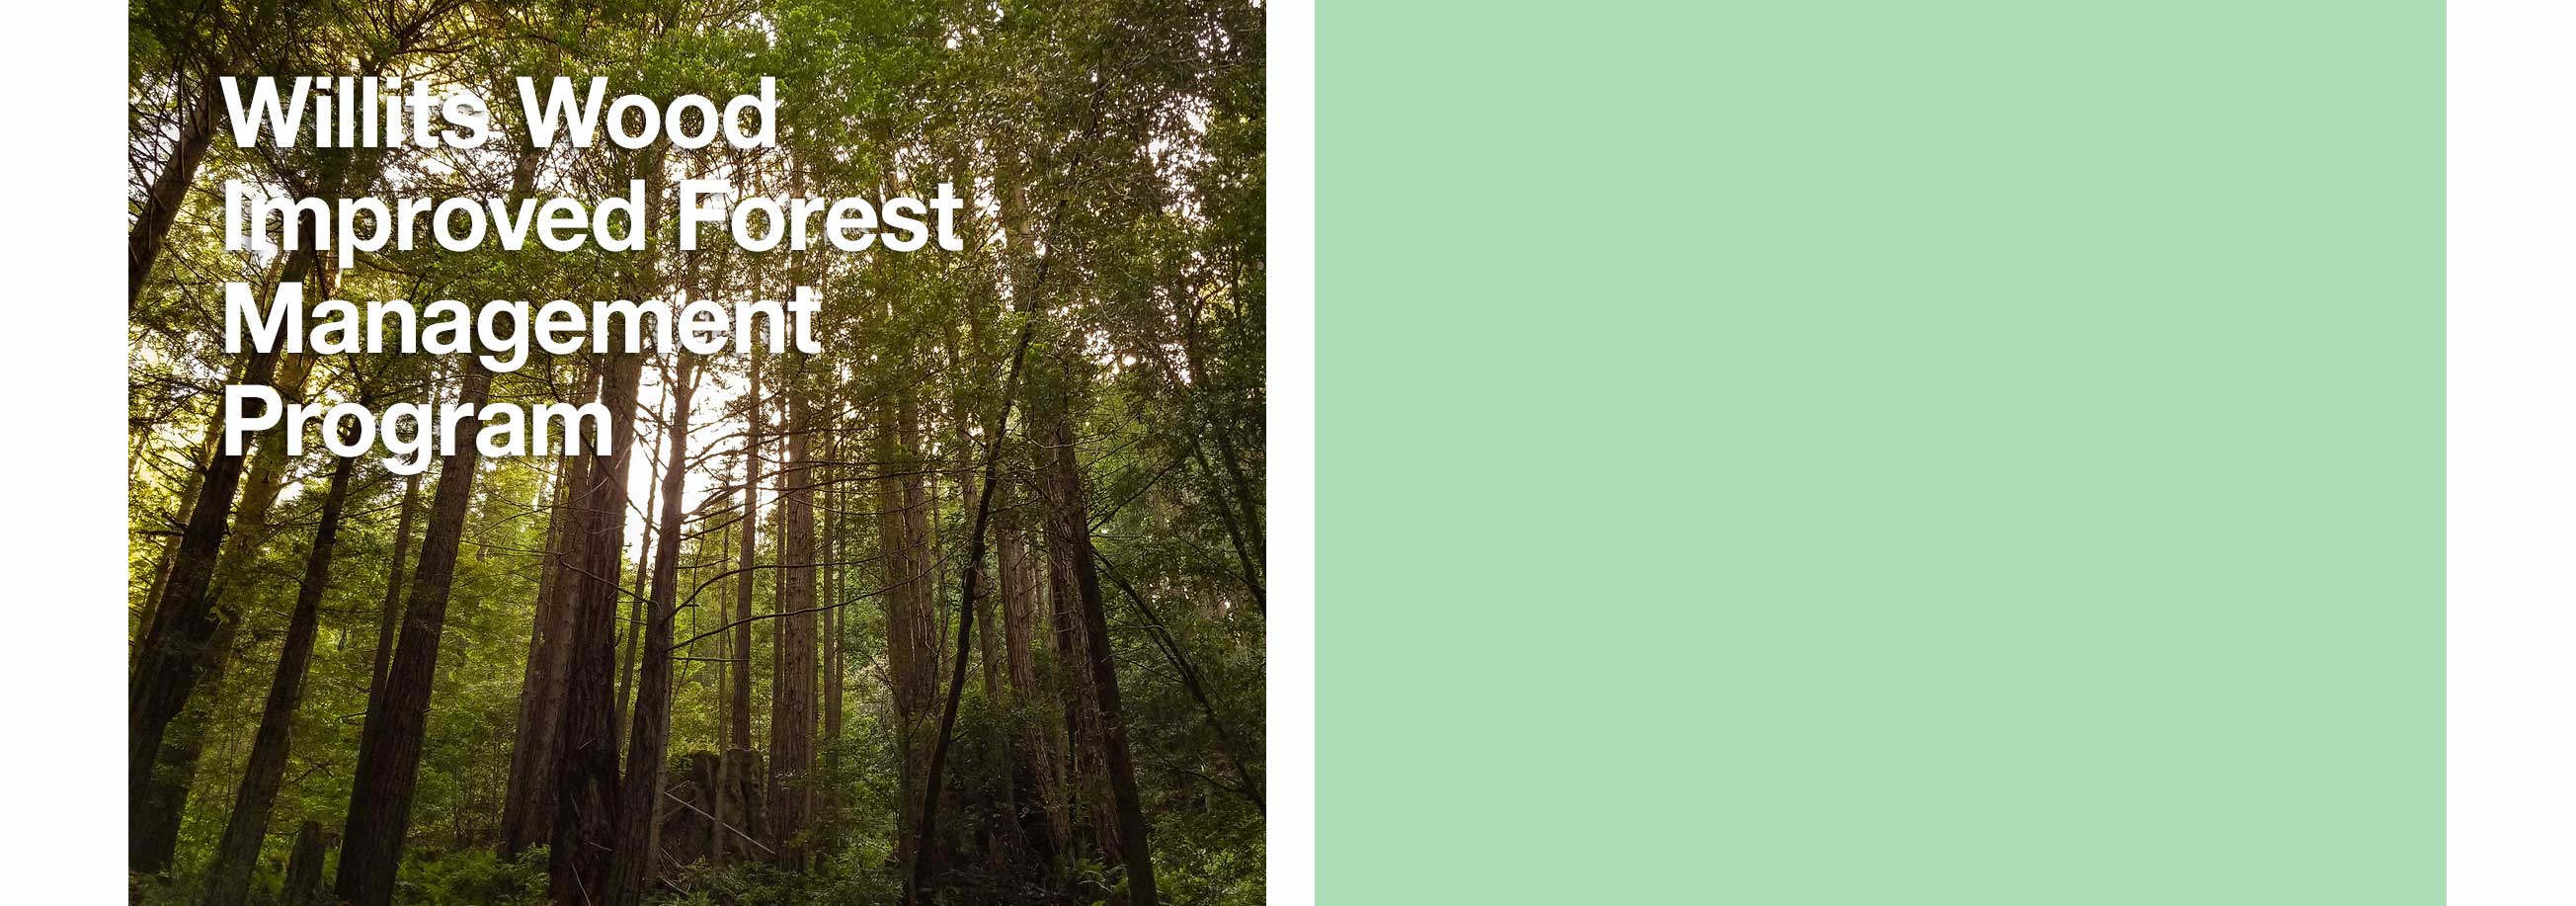 Willits Wood Improved Forest Management Program